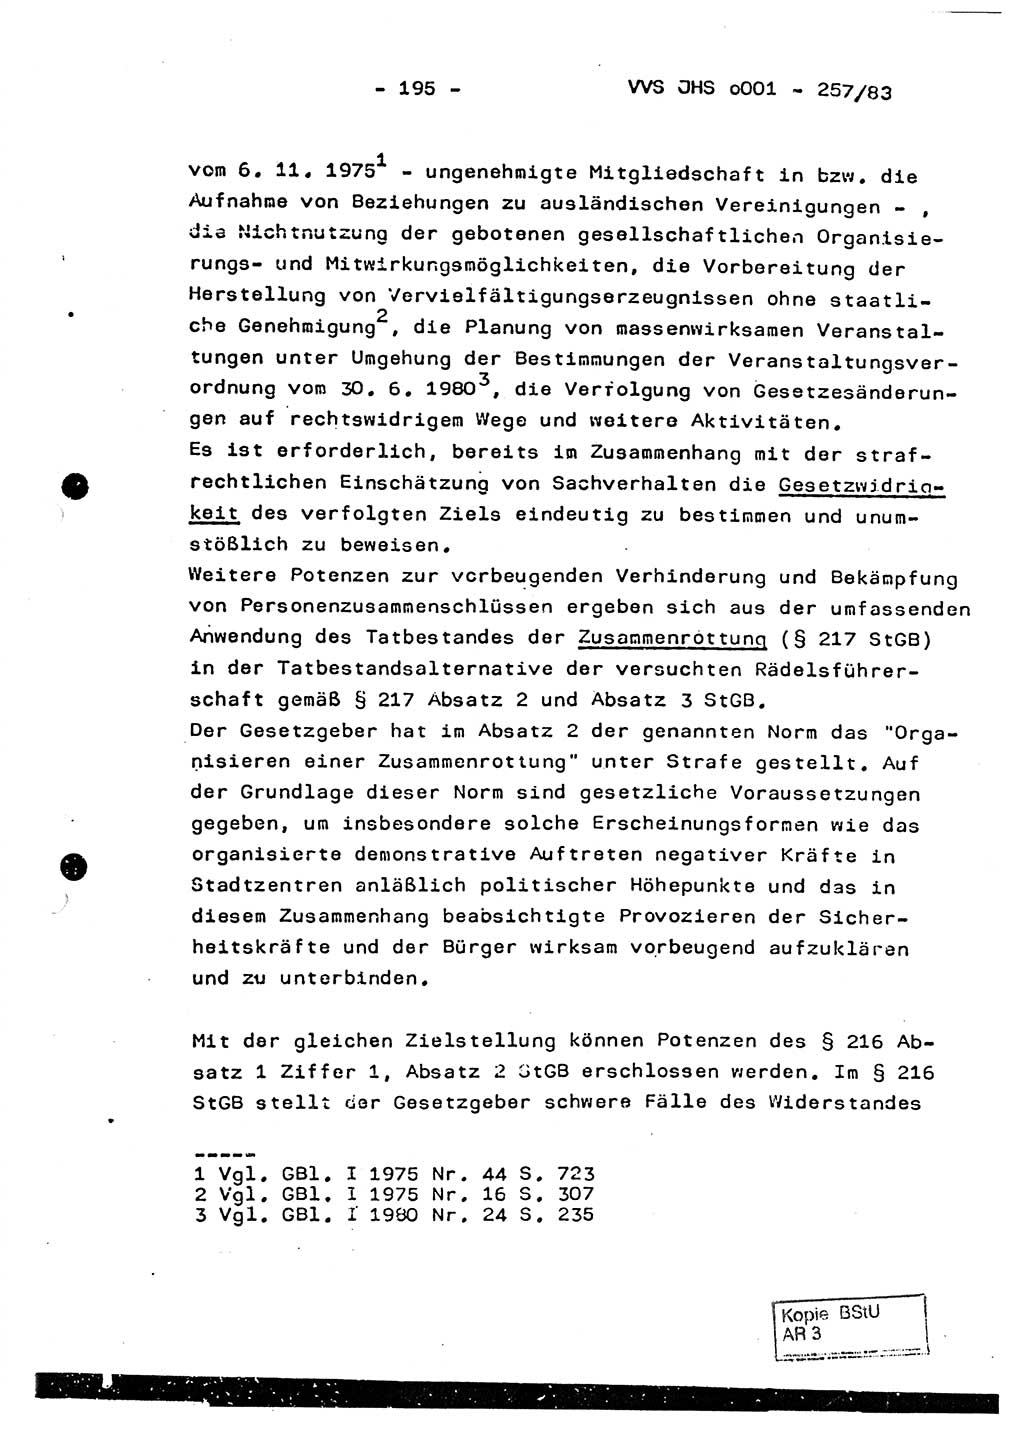 Dissertation, Oberst Helmut Lubas (BV Mdg.), Oberstleutnant Manfred Eschberger (HA IX), Oberleutnant Hans-Jürgen Ludwig (JHS), Ministerium für Staatssicherheit (MfS) [Deutsche Demokratische Republik (DDR)], Juristische Hochschule (JHS), Vertrauliche Verschlußsache (VVS) o001-257/83, Potsdam 1983, Seite 195 (Diss. MfS DDR JHS VVS o001-257/83 1983, S. 195)